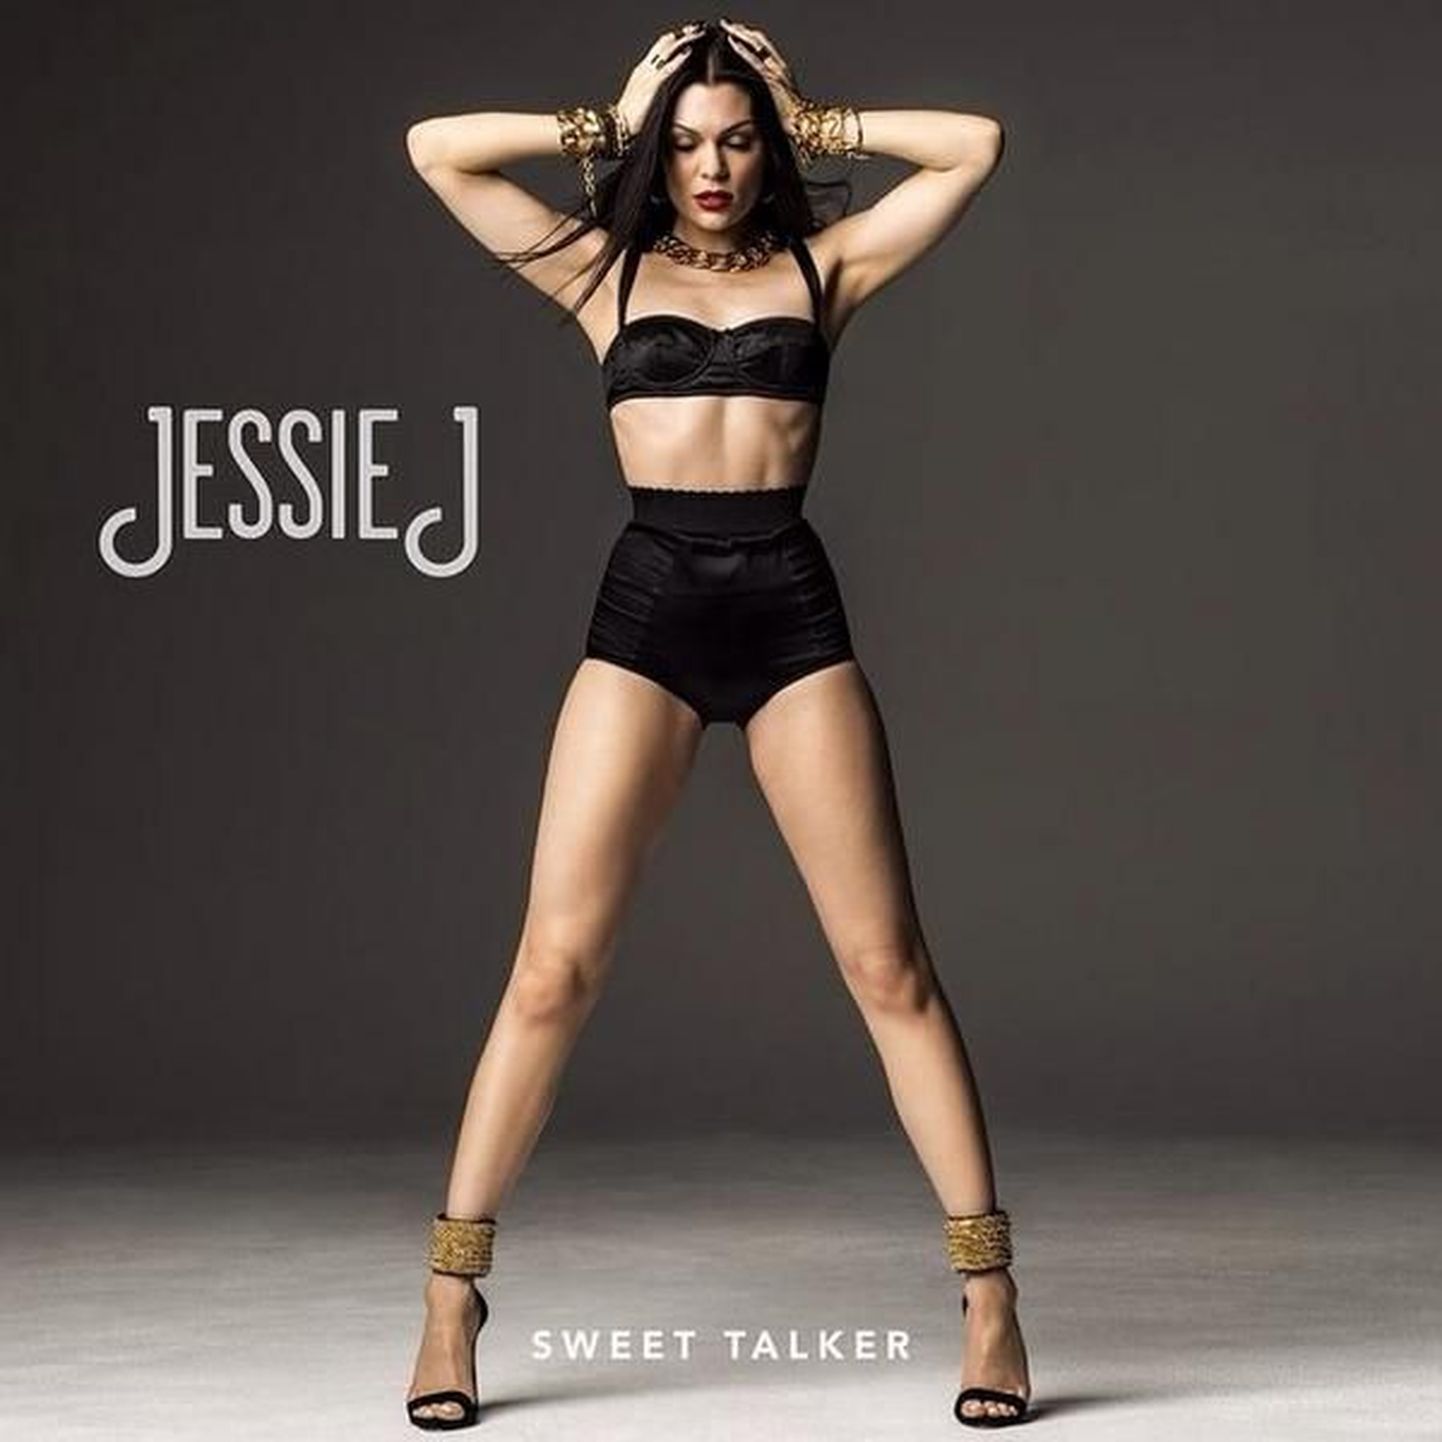 Jessie J "Sweet Talker"